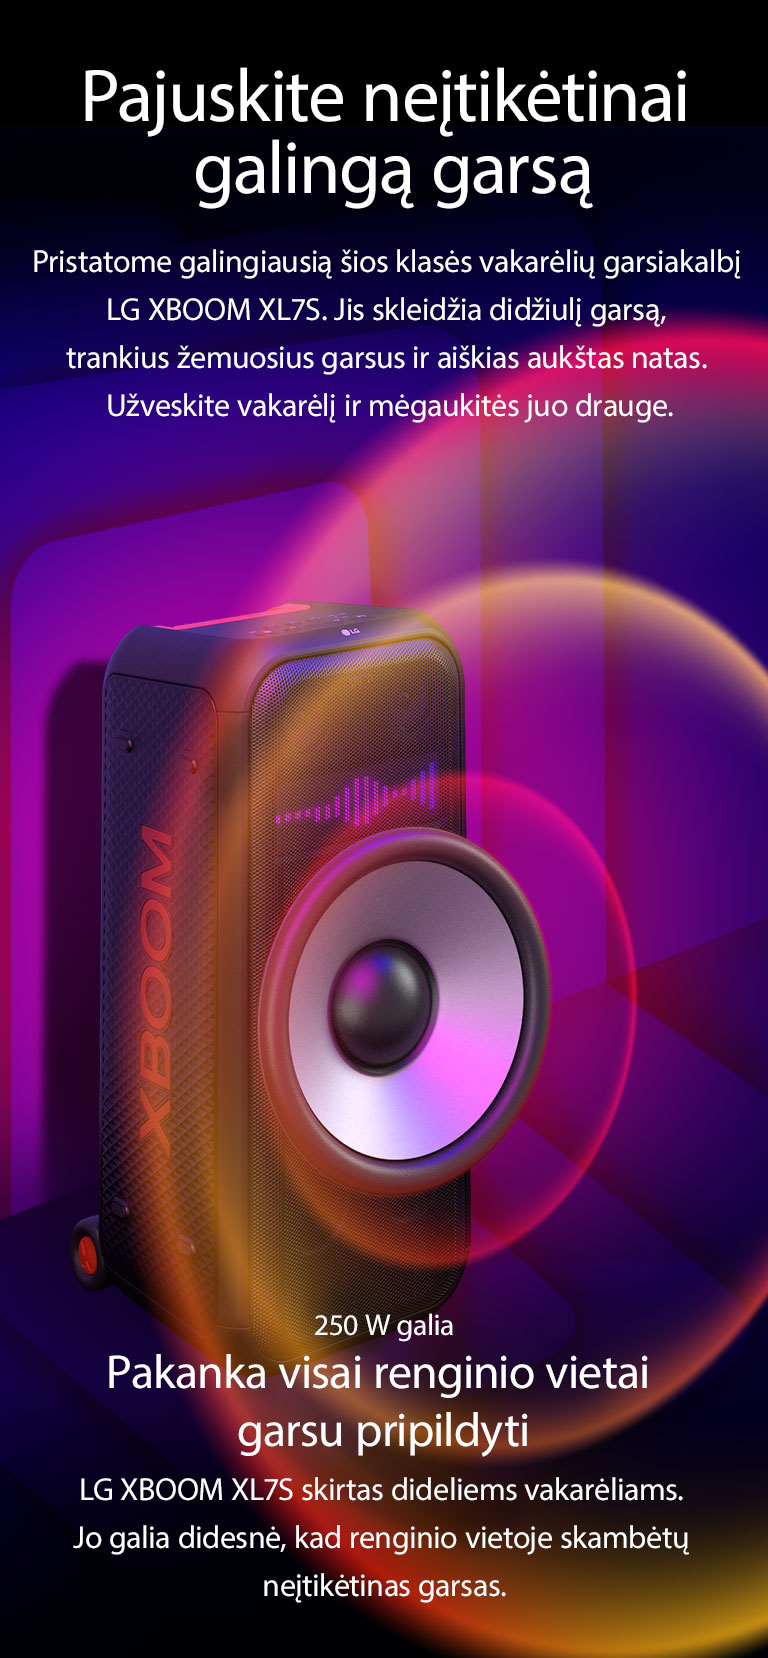 LG XBOOM XL7S beribėje erdvėje. Ant sienos vaizduojama kvadratinė garso grafika. Garsiakalbio viduje plačiai įmontuotas 8 col. gigantiškas žemųjų dažnių garsiakalbis, kad girdėtumėte didelį 250 W garsą. Iš žemųjų dažnių garsiakalbio sklinda garso bangos.